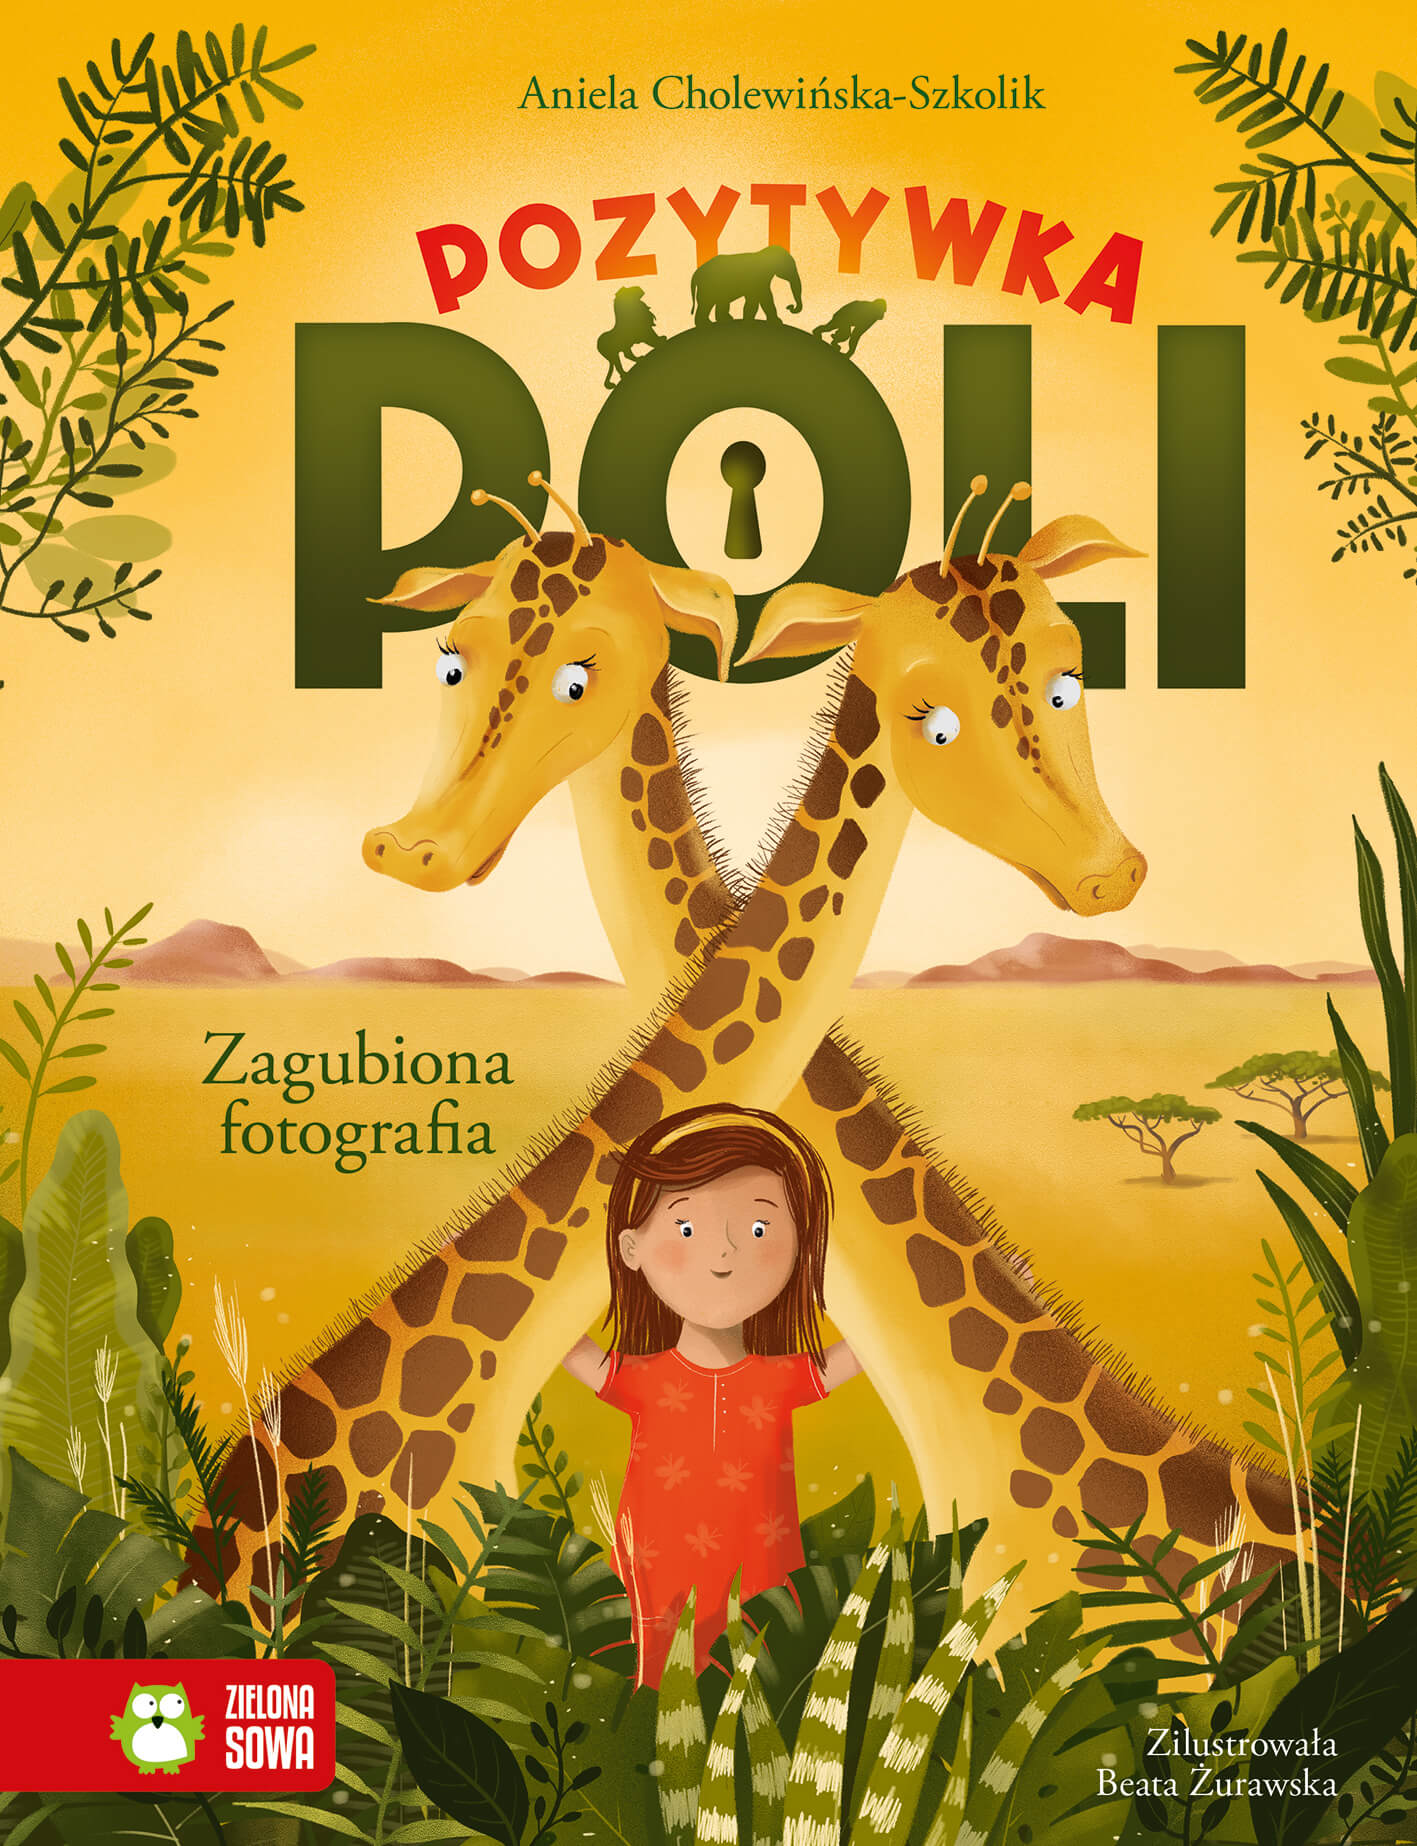 Okładka książki pt. "Pozytywka Poli" autorstwa Anieli Cholewińskiej-Szkolik. Na okładce widzimy dwie żyrafy i dziewczynkę